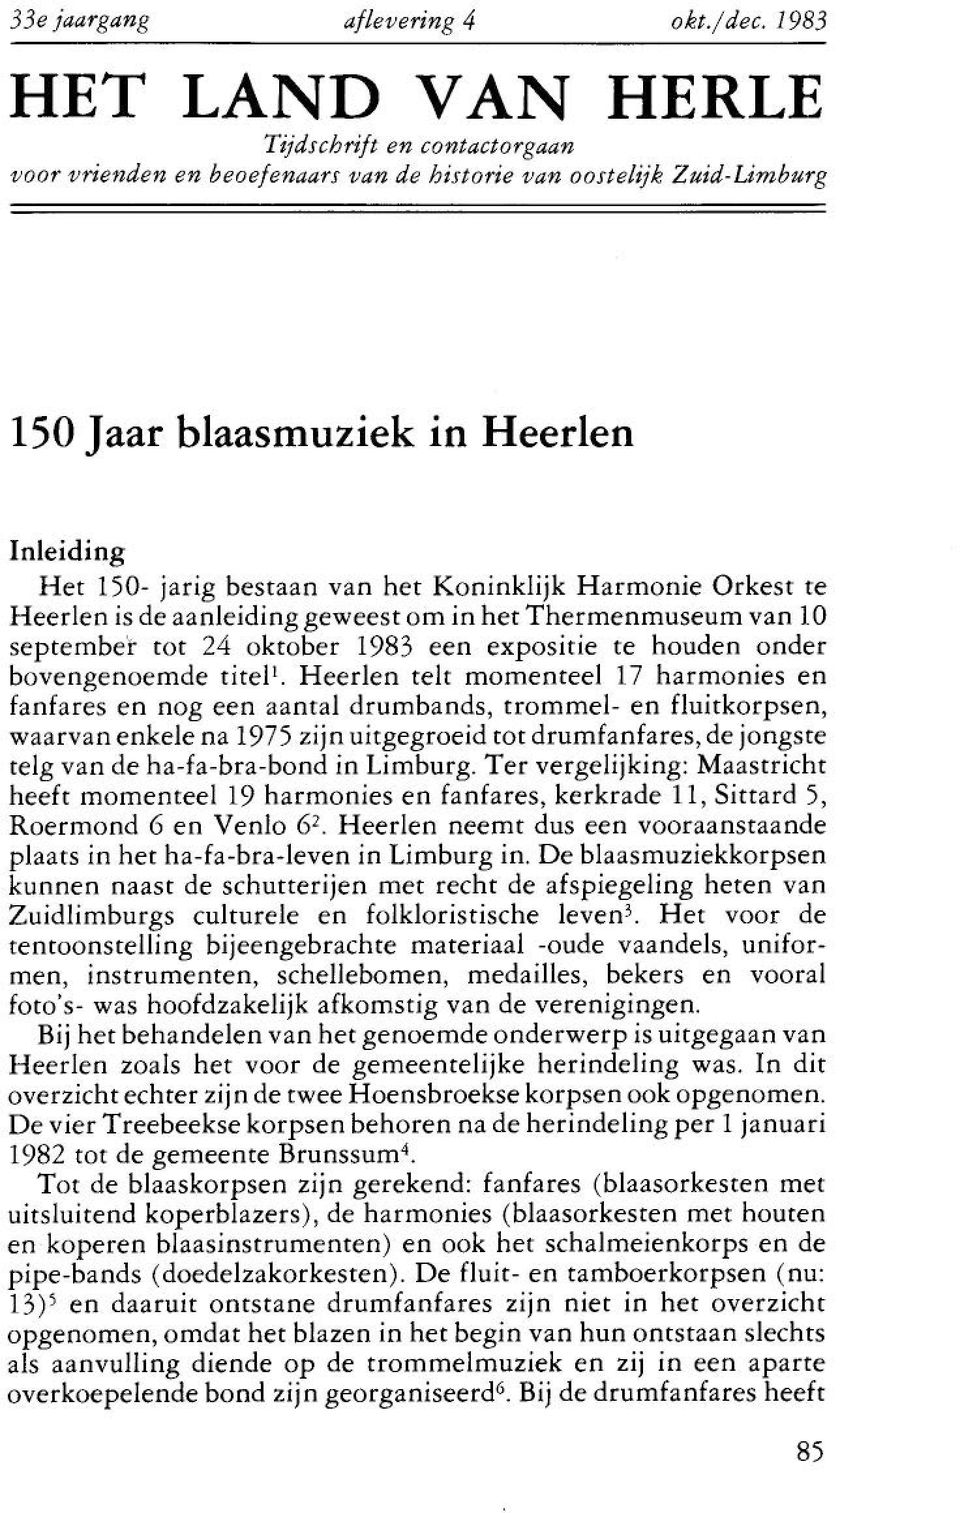 Koninklijk Harmonie Orkest te Heerlen is de aanleiding geweest om in het Thermenmuseum van 10 september tot 24 oktober 1983 een expositie te houden onder bovengenoemde titel'.